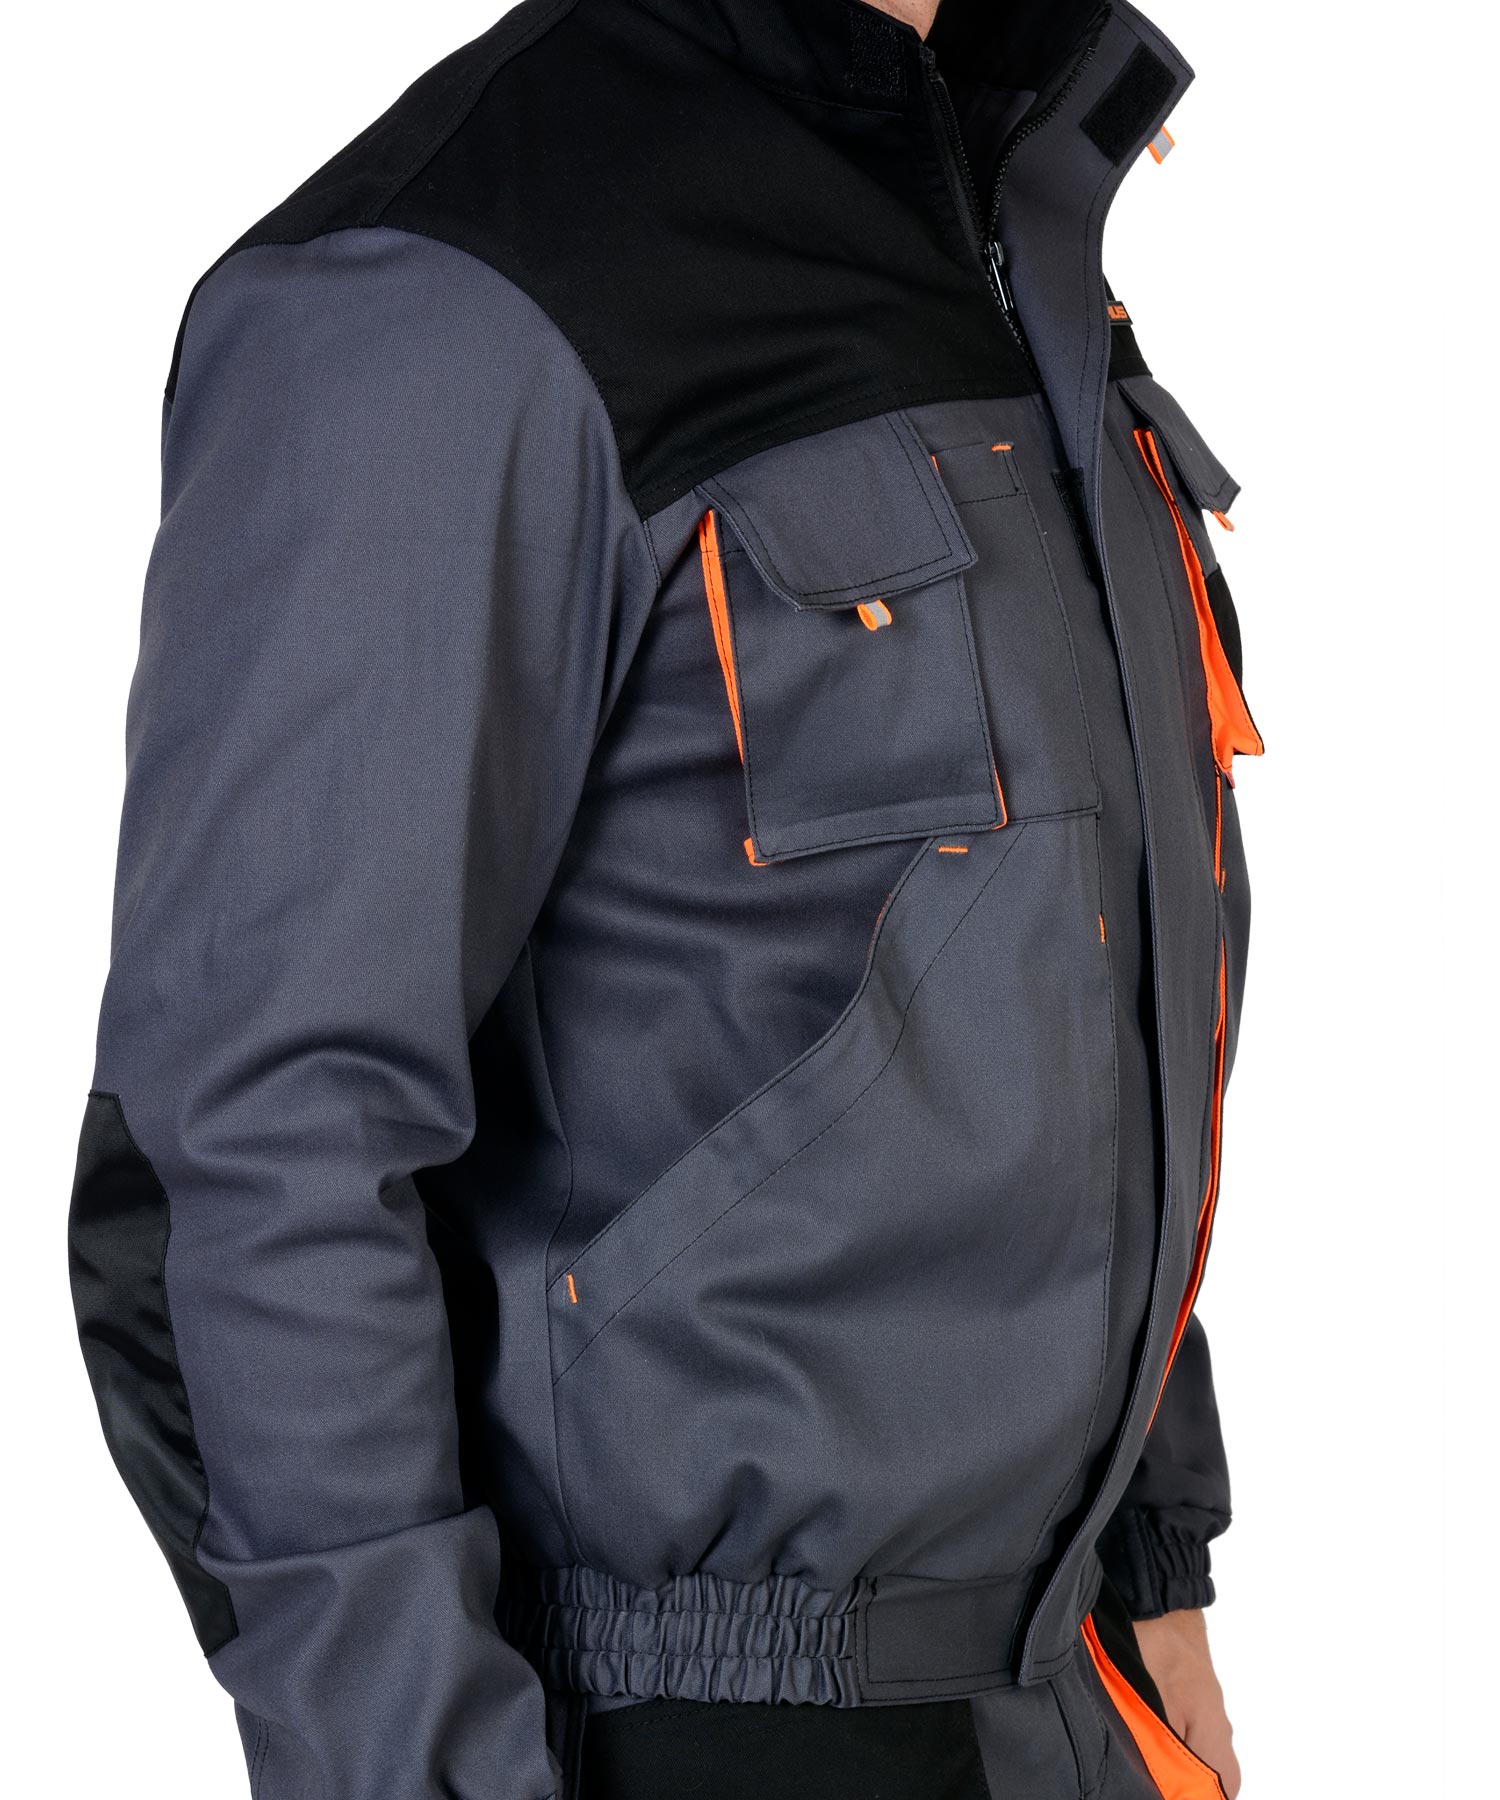 Костюм МАНХЕТТЕН: короткая куртка, брюки, т.серый с оранжевым и черным